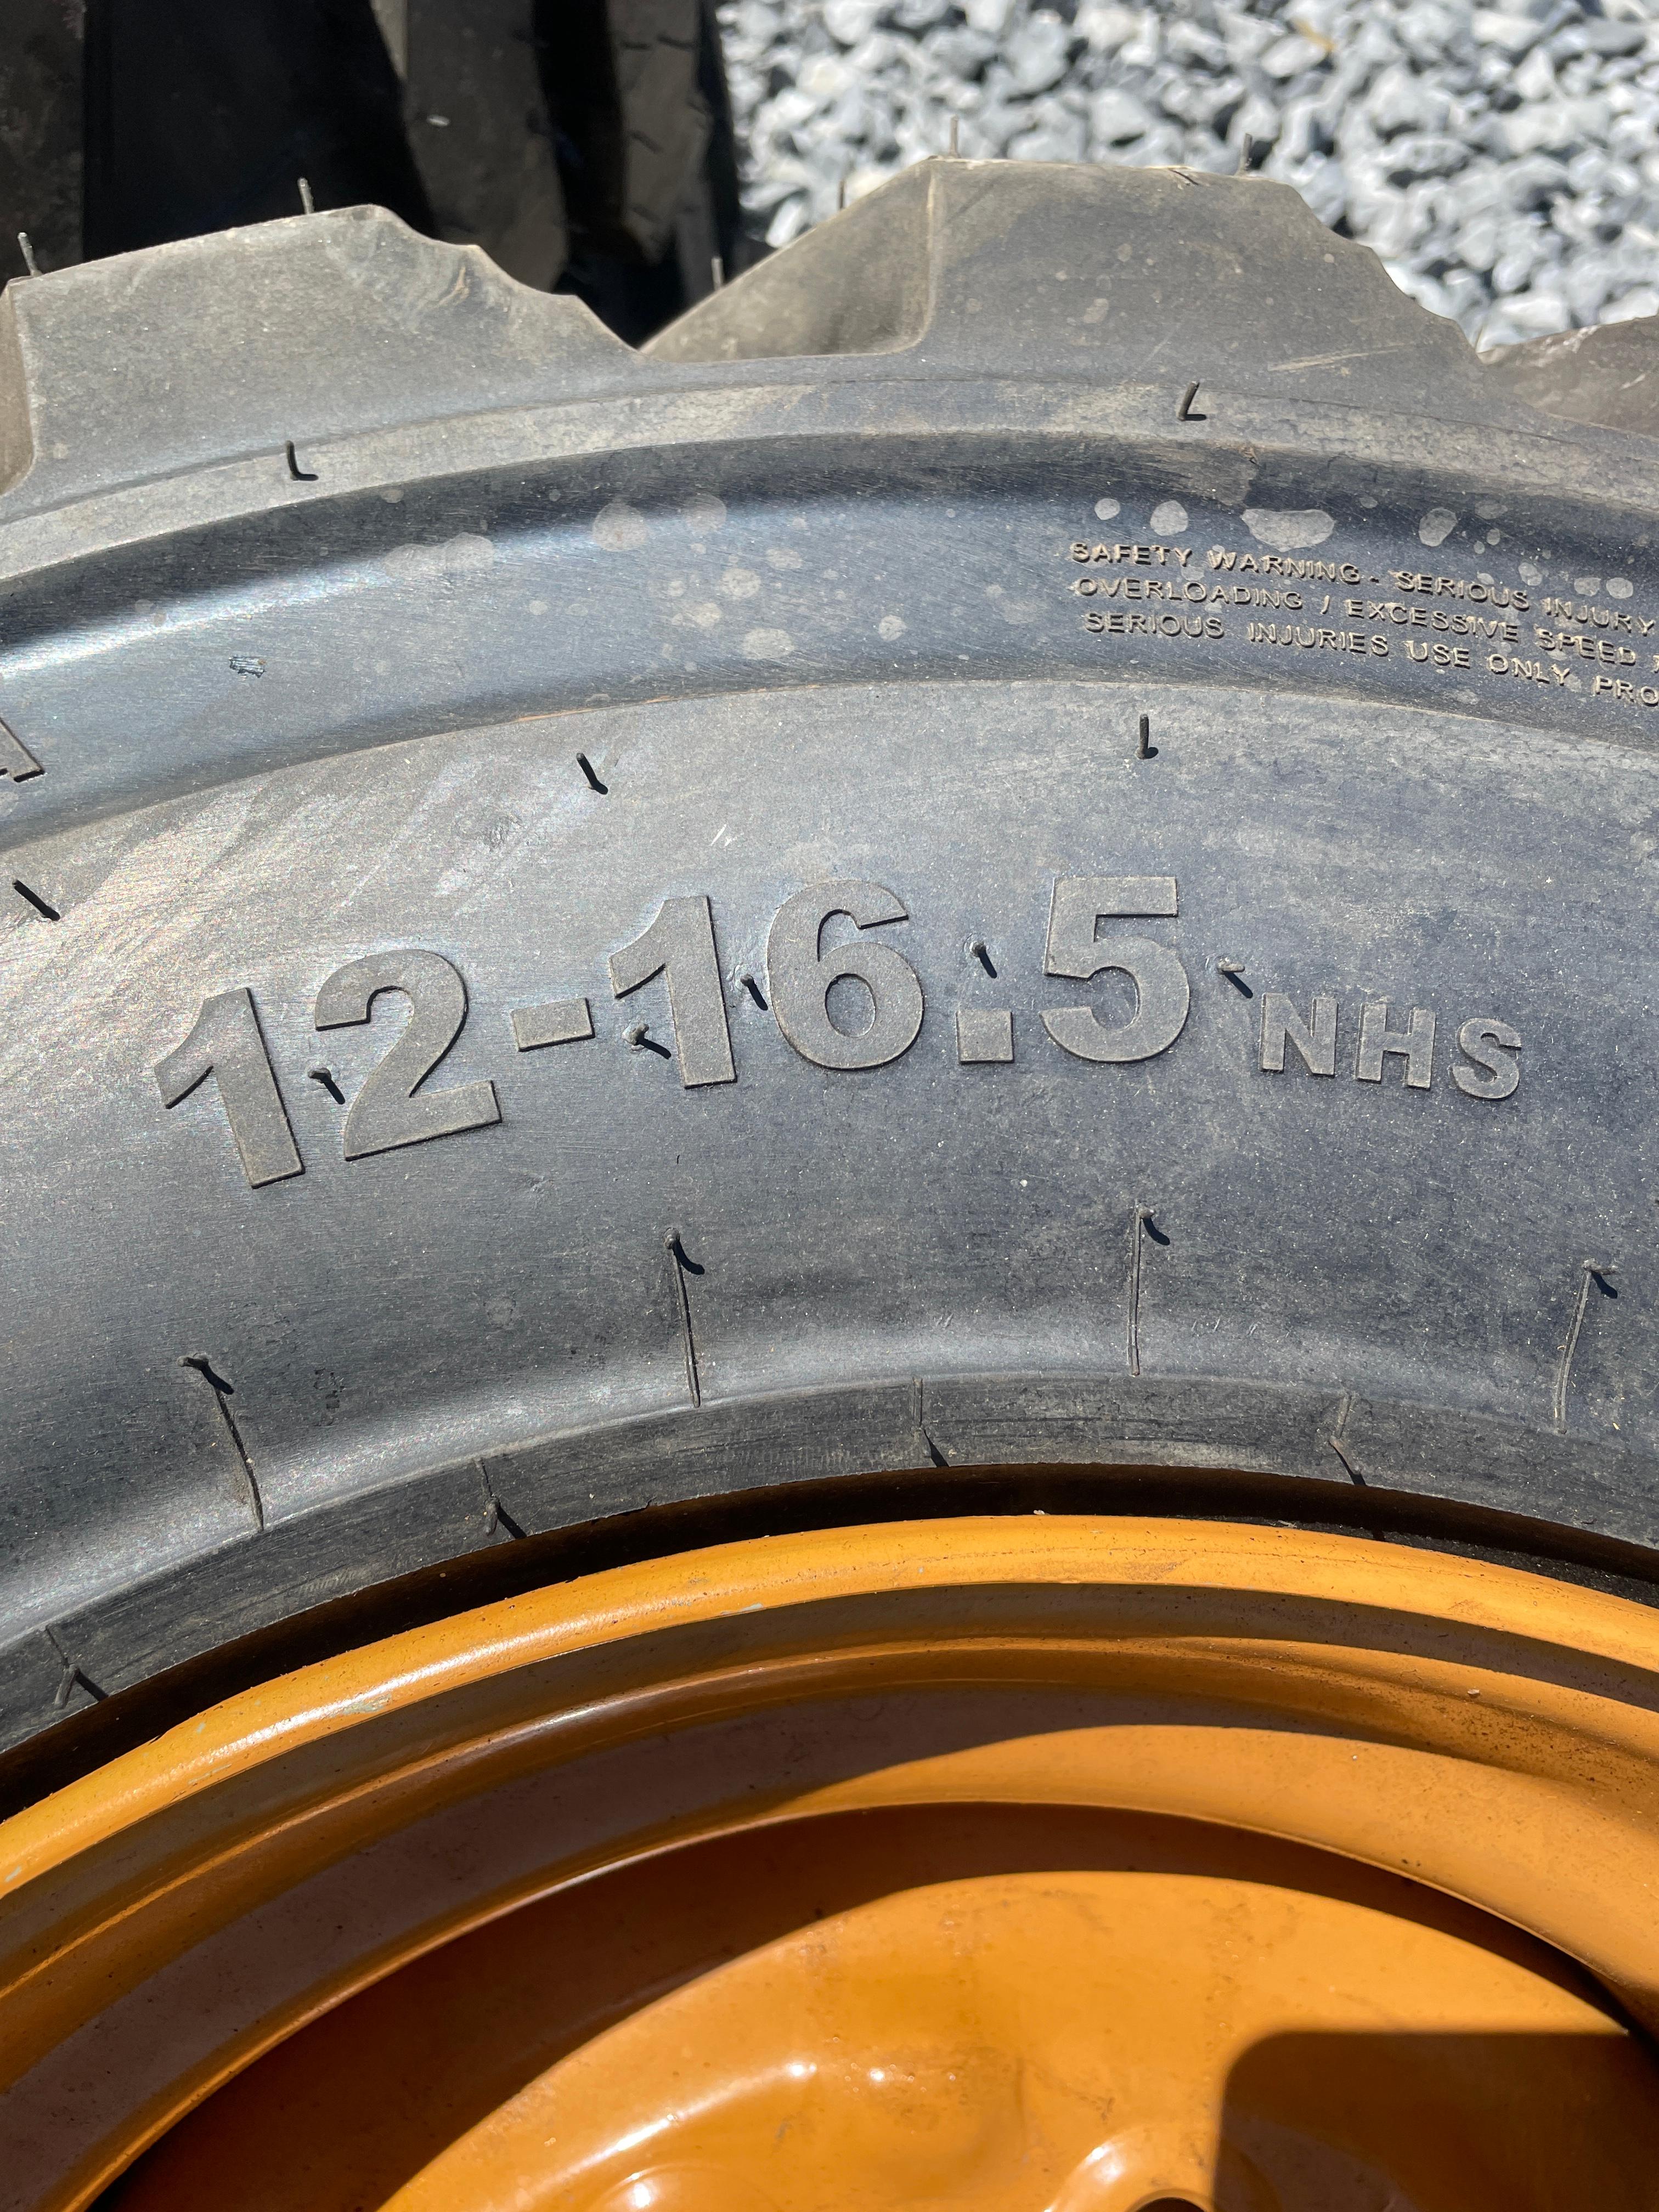 New Set Of (4) 12-16.5 NHS Skid Loader Tires